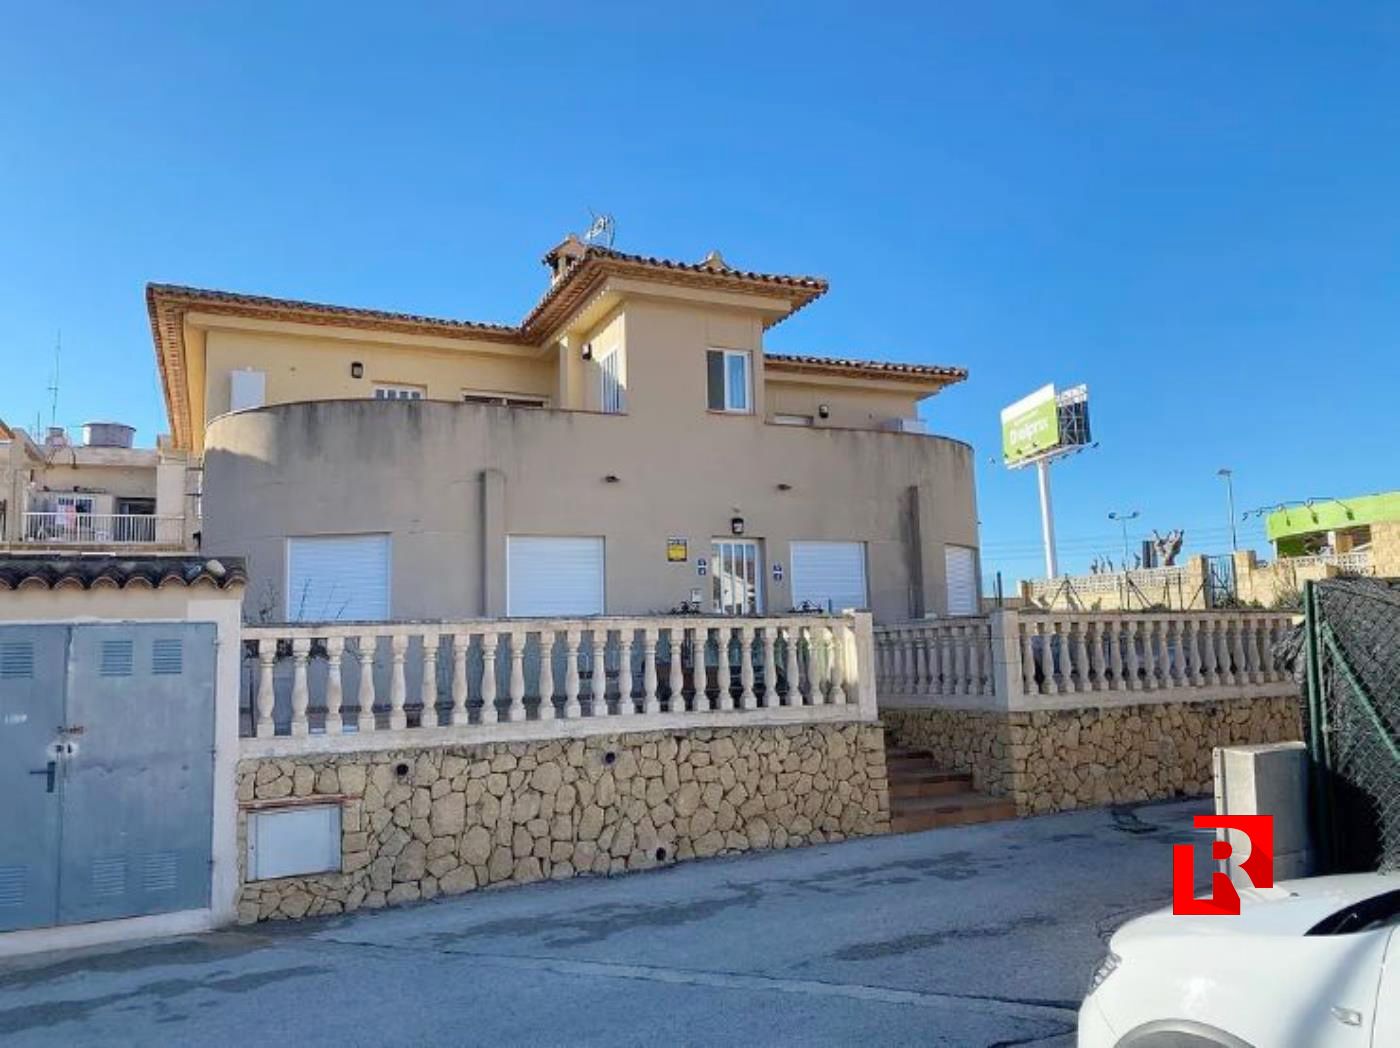 Villa à vendre dans le quartier résidentiel - La Nucia, à 9 km de Benidorm